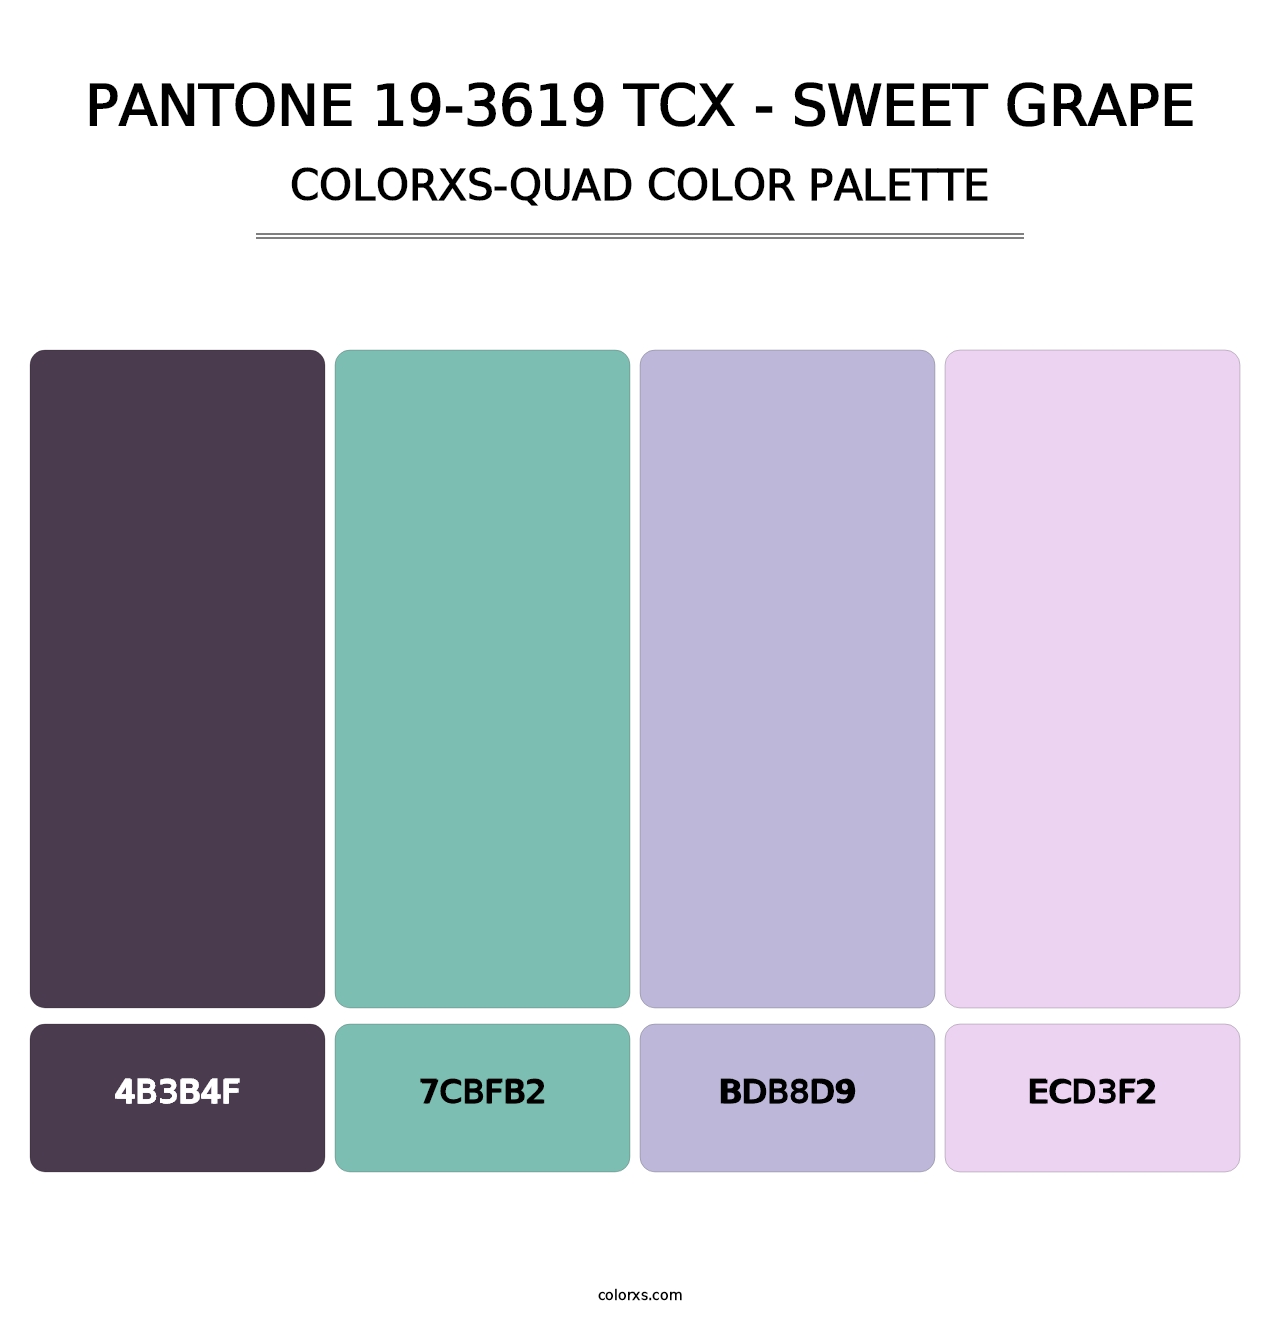 PANTONE 19-3619 TCX - Sweet Grape - Colorxs Quad Palette